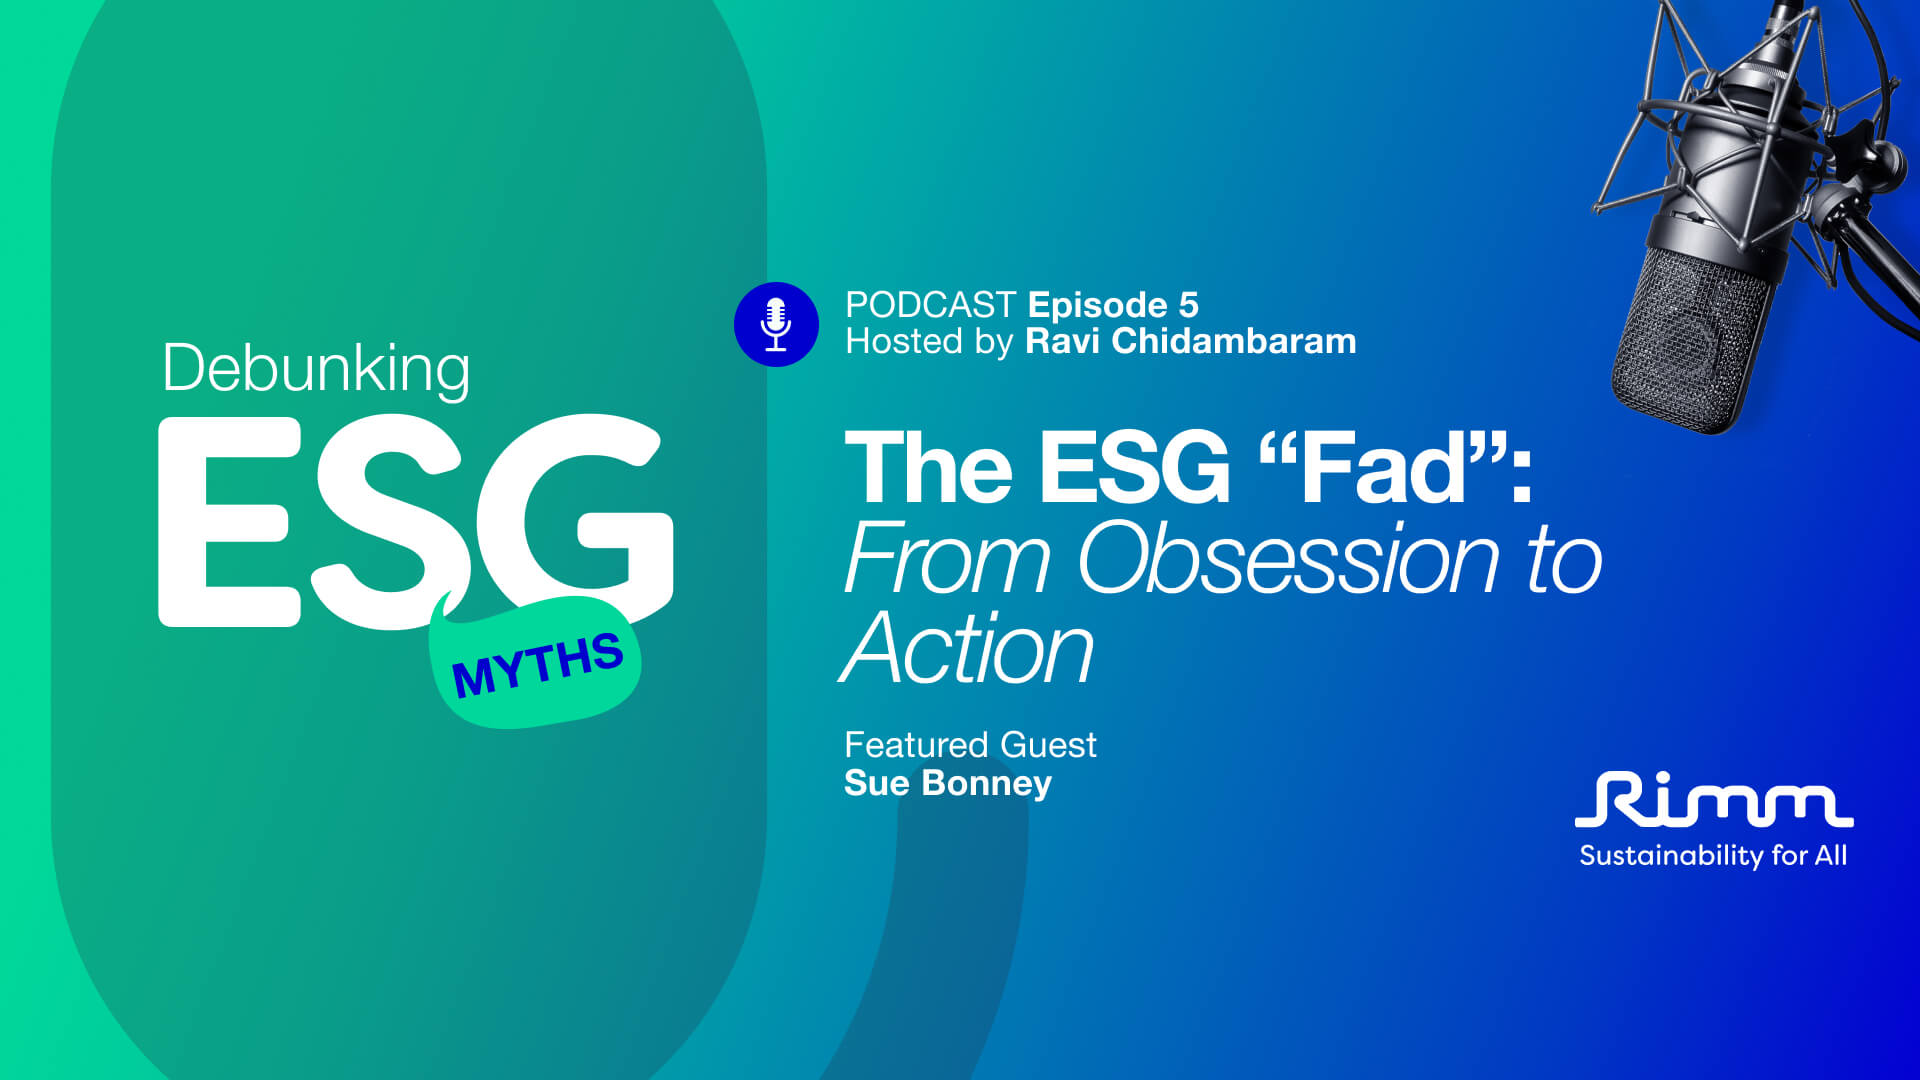 Debunking ESG Myths Episode 5